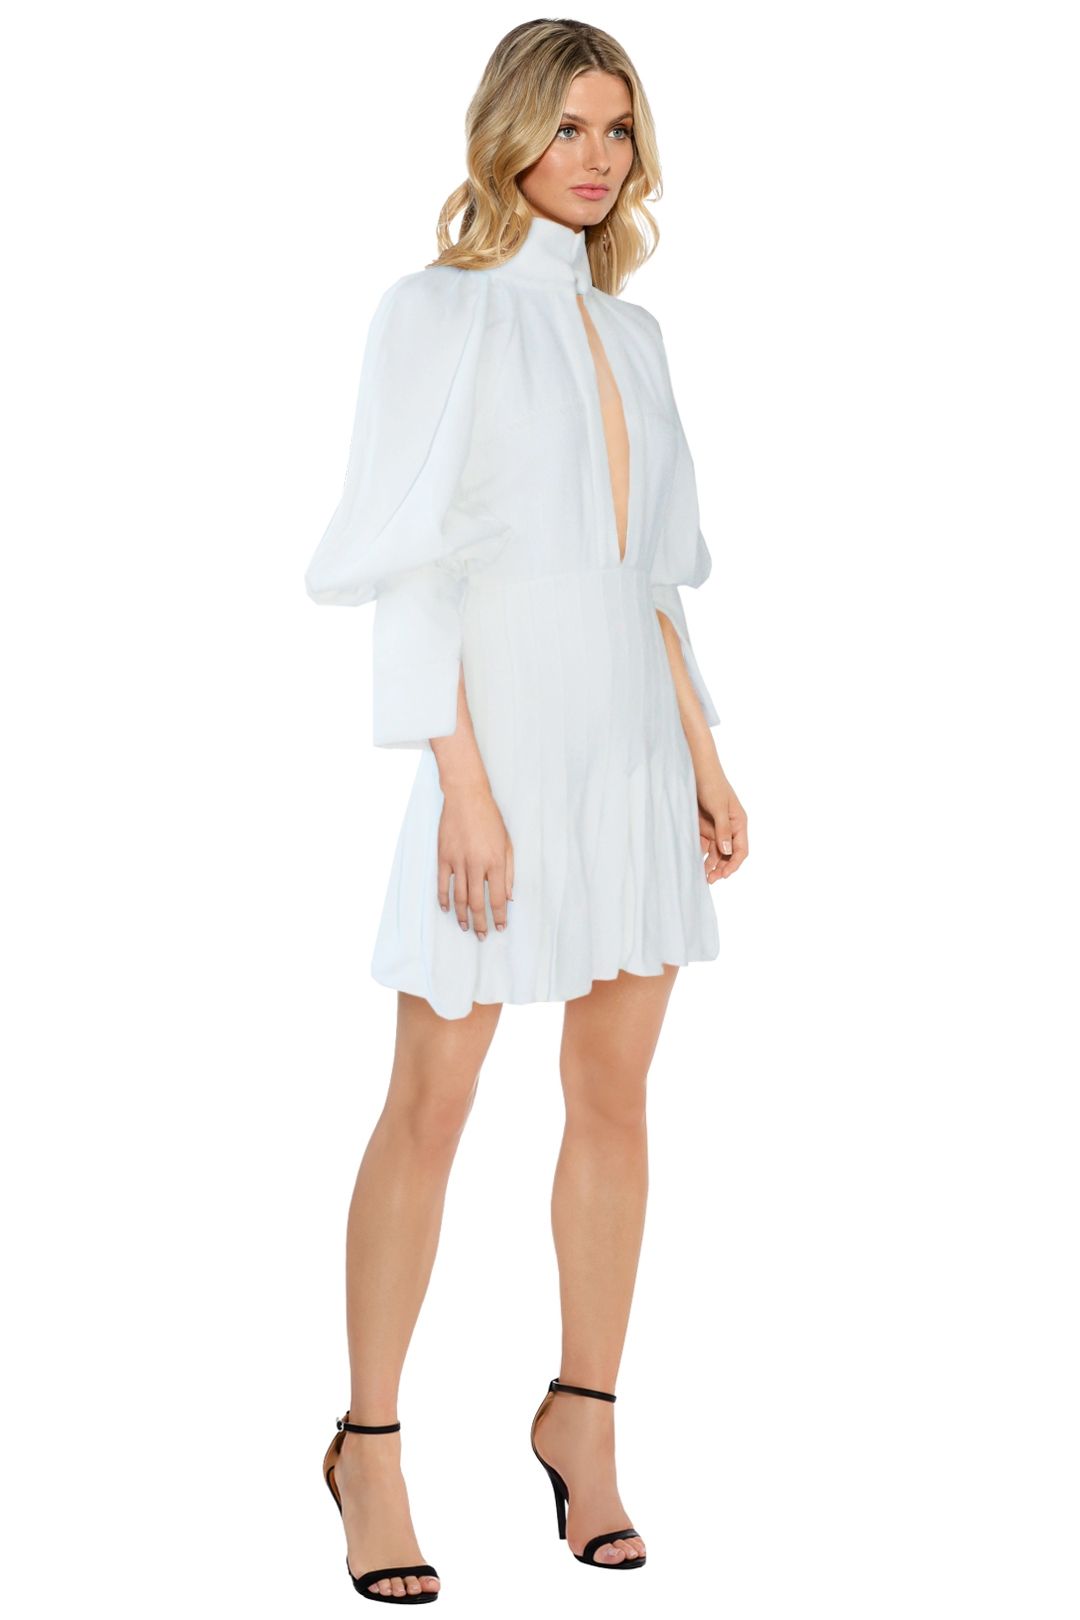 Ellery - Butler Voluminous Sleeve Dress - White - Side